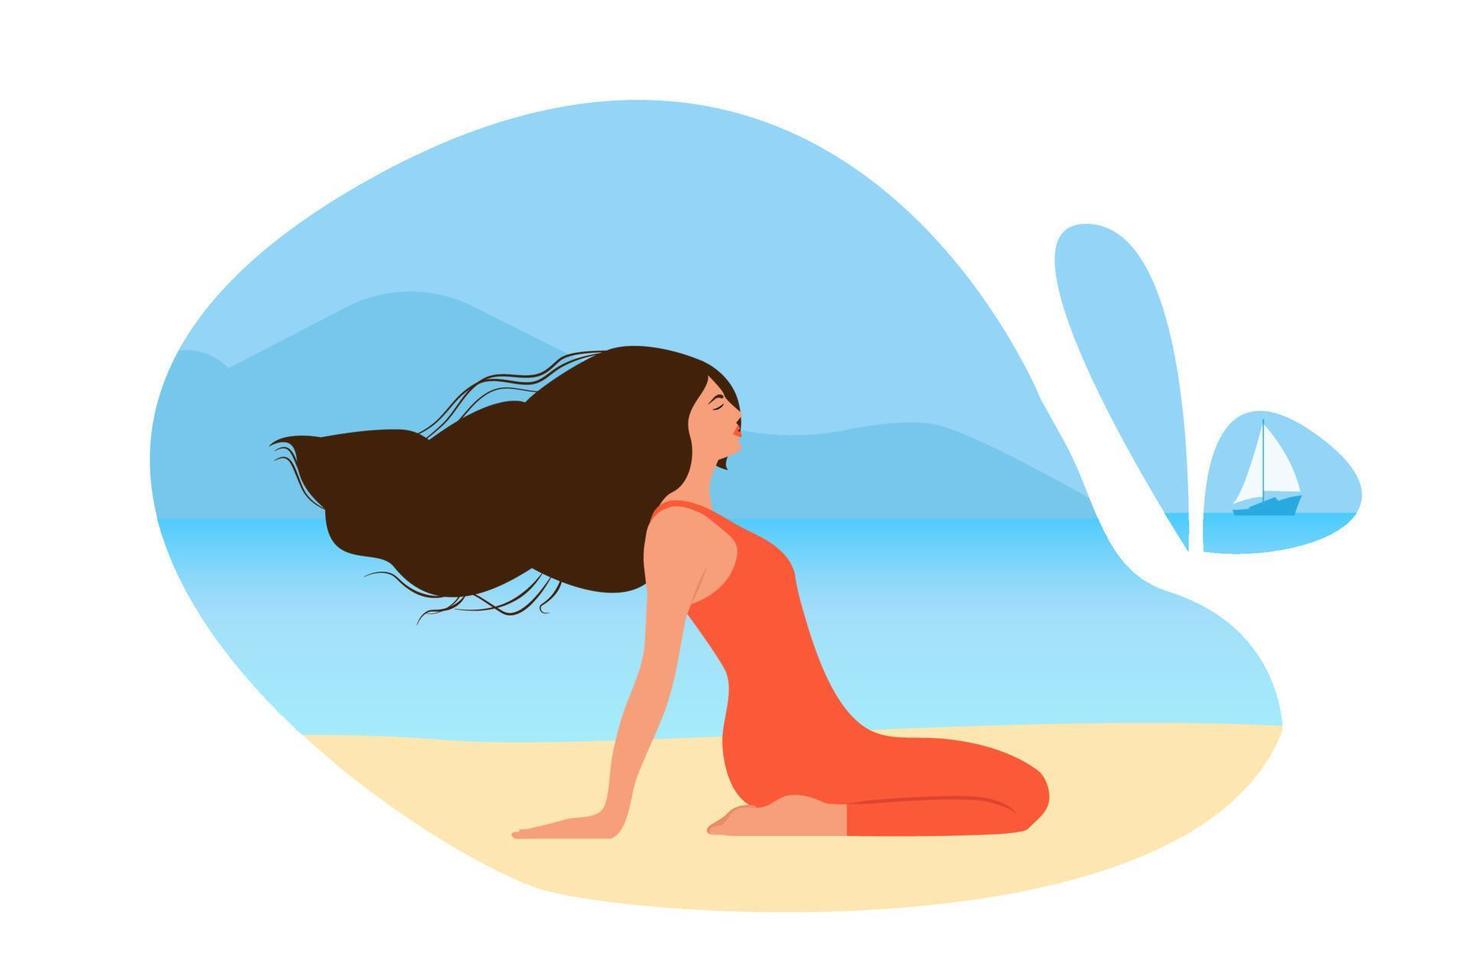 gelukkige vrouw zittend op het strand en mediteren. jong meisje doet ochtend stretching. glimlachend vrouwelijk karakter genietend van haar vrijheid en leven. welzijn, welzijn geest. positief lichaam. vector